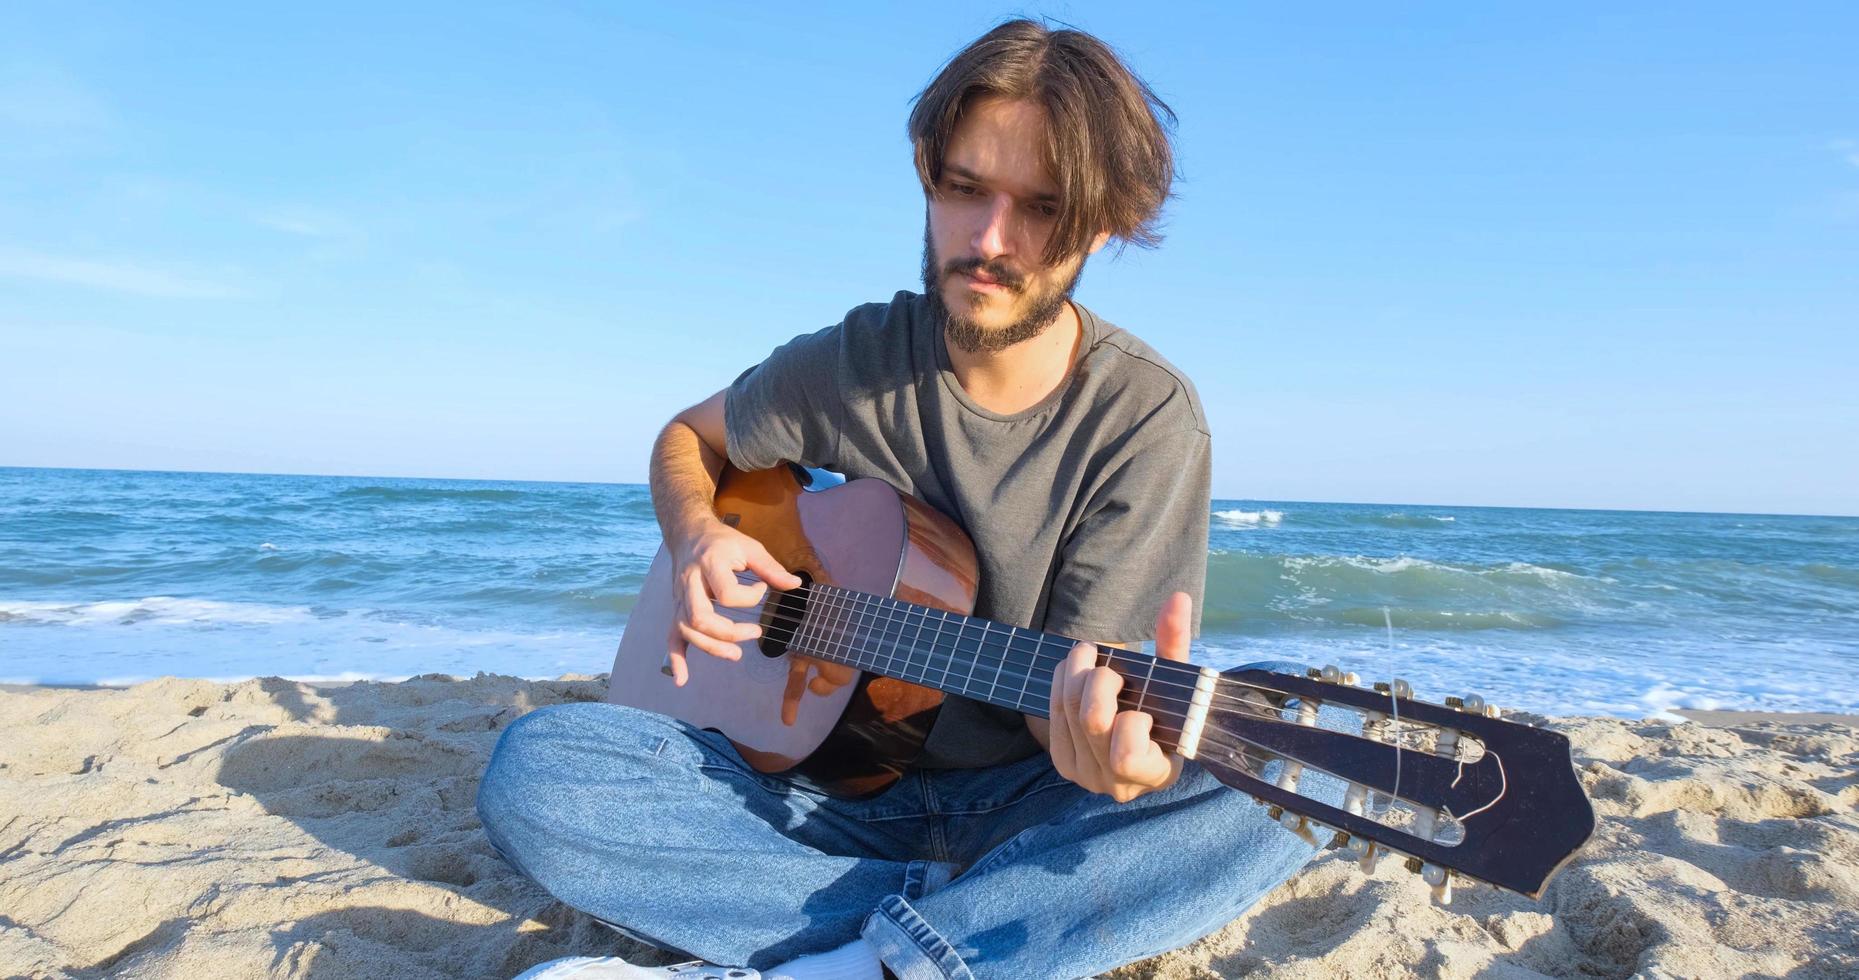 junge gutaussehende männliche spielen in der akustischen gitarre am strand an sonnigen tagen, im meer oder im ozean im hintergrund foto